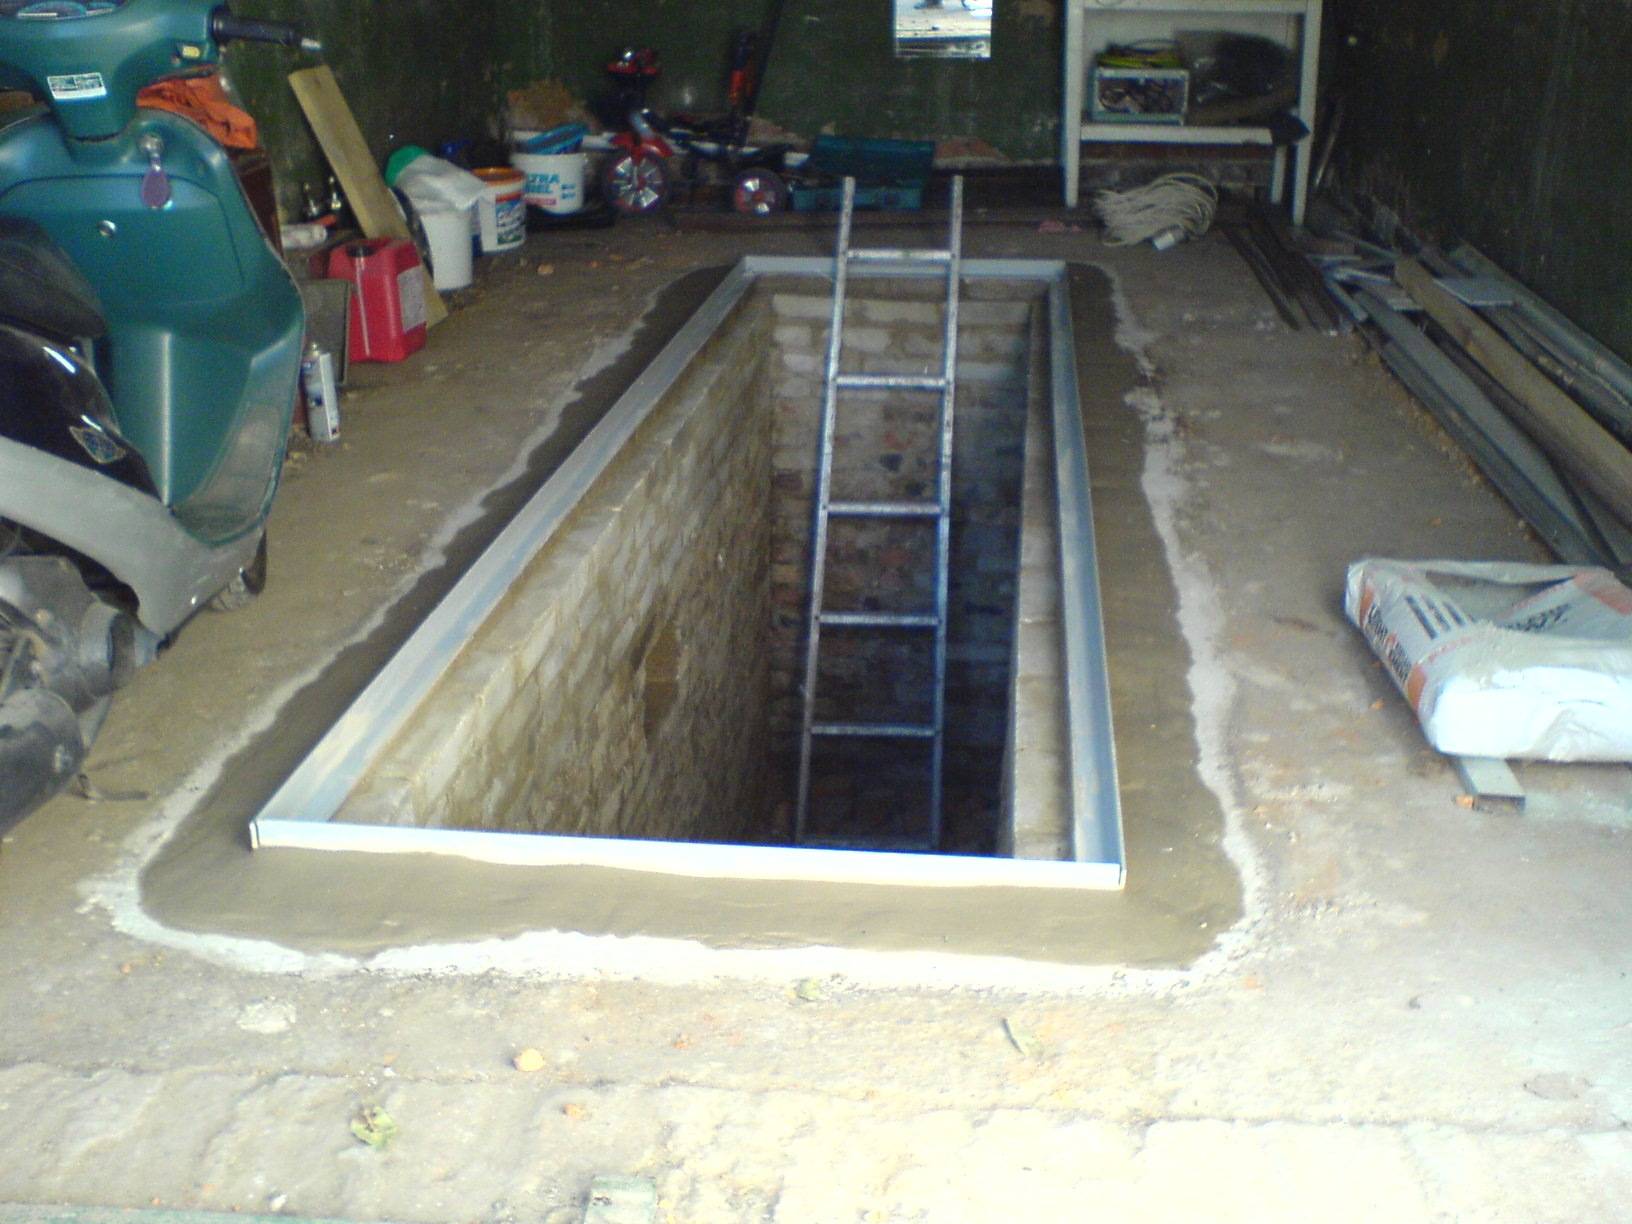 Смотровая яма в гараже своими руками - размеры погреба и видео о гидроизоляции ямы